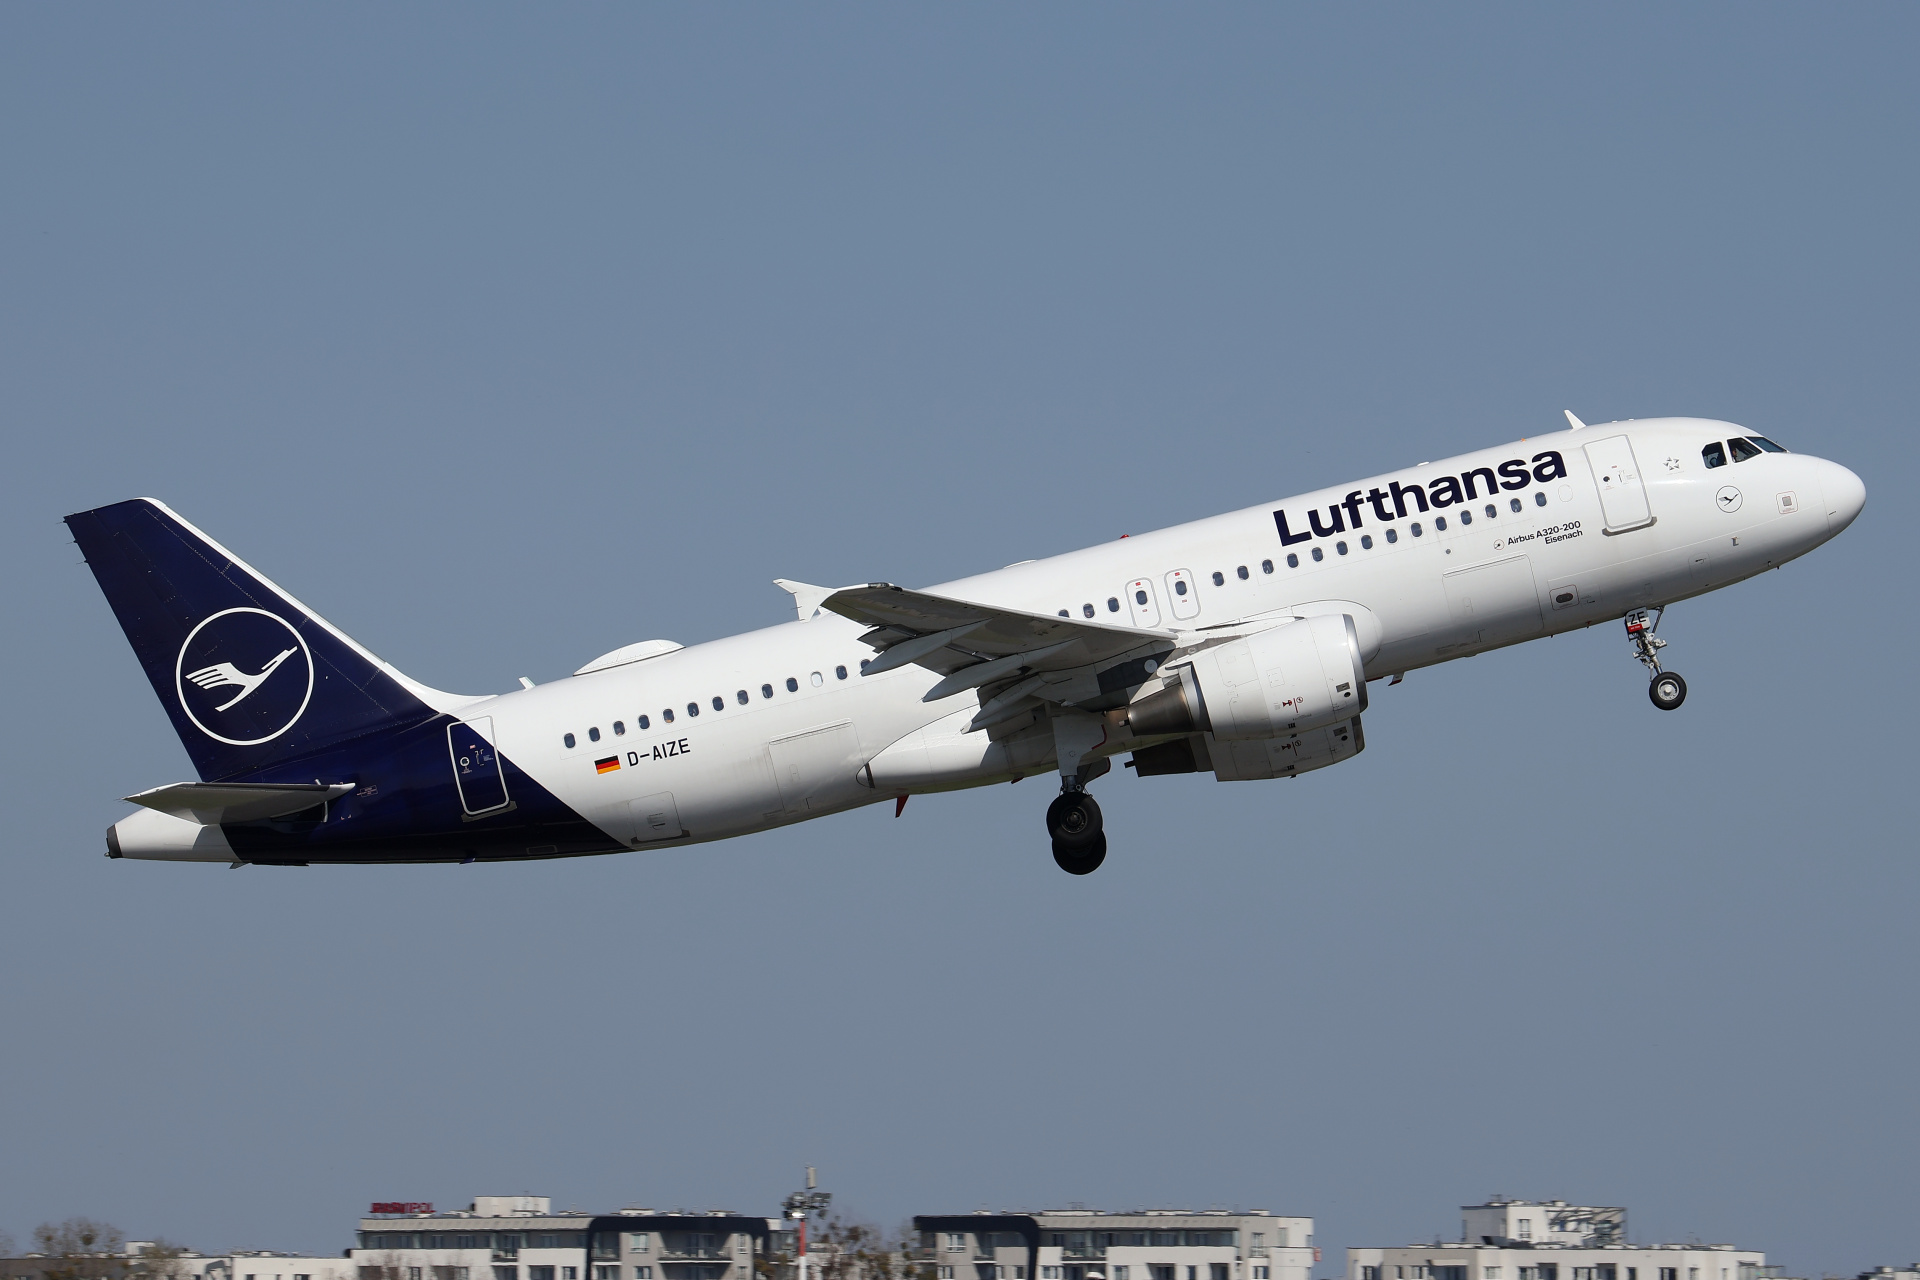 D-AIZE (Aircraft » EPWA Spotting » Airbus A320-200 » Lufthansa)